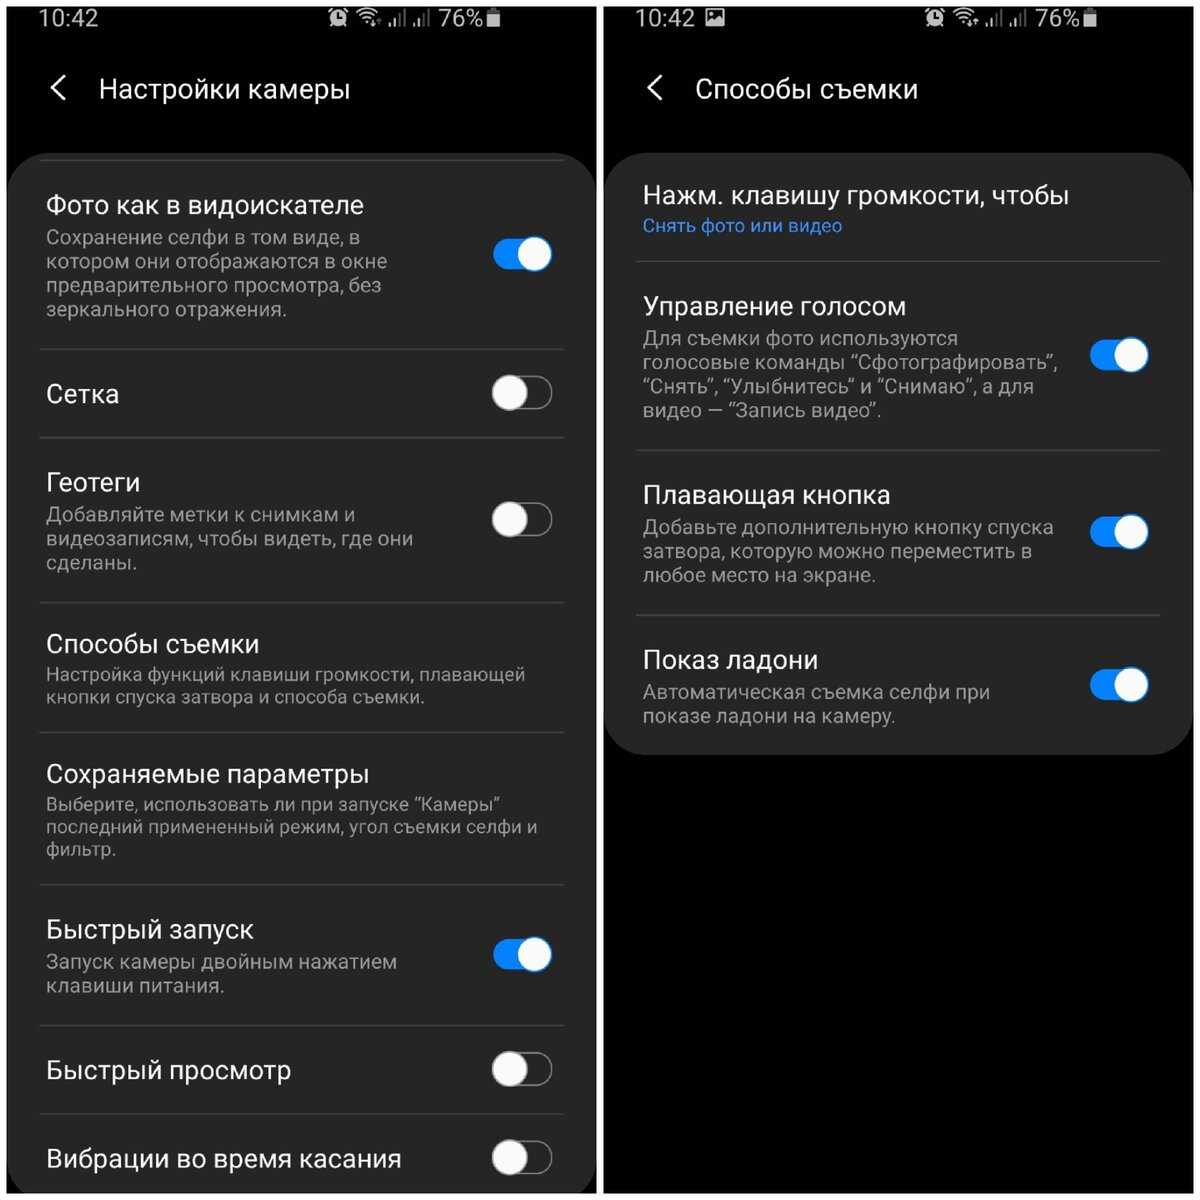 Как пользоваться телеграмм на телефоне пошаговая инструкция по применению андроид на русском языке фото 73